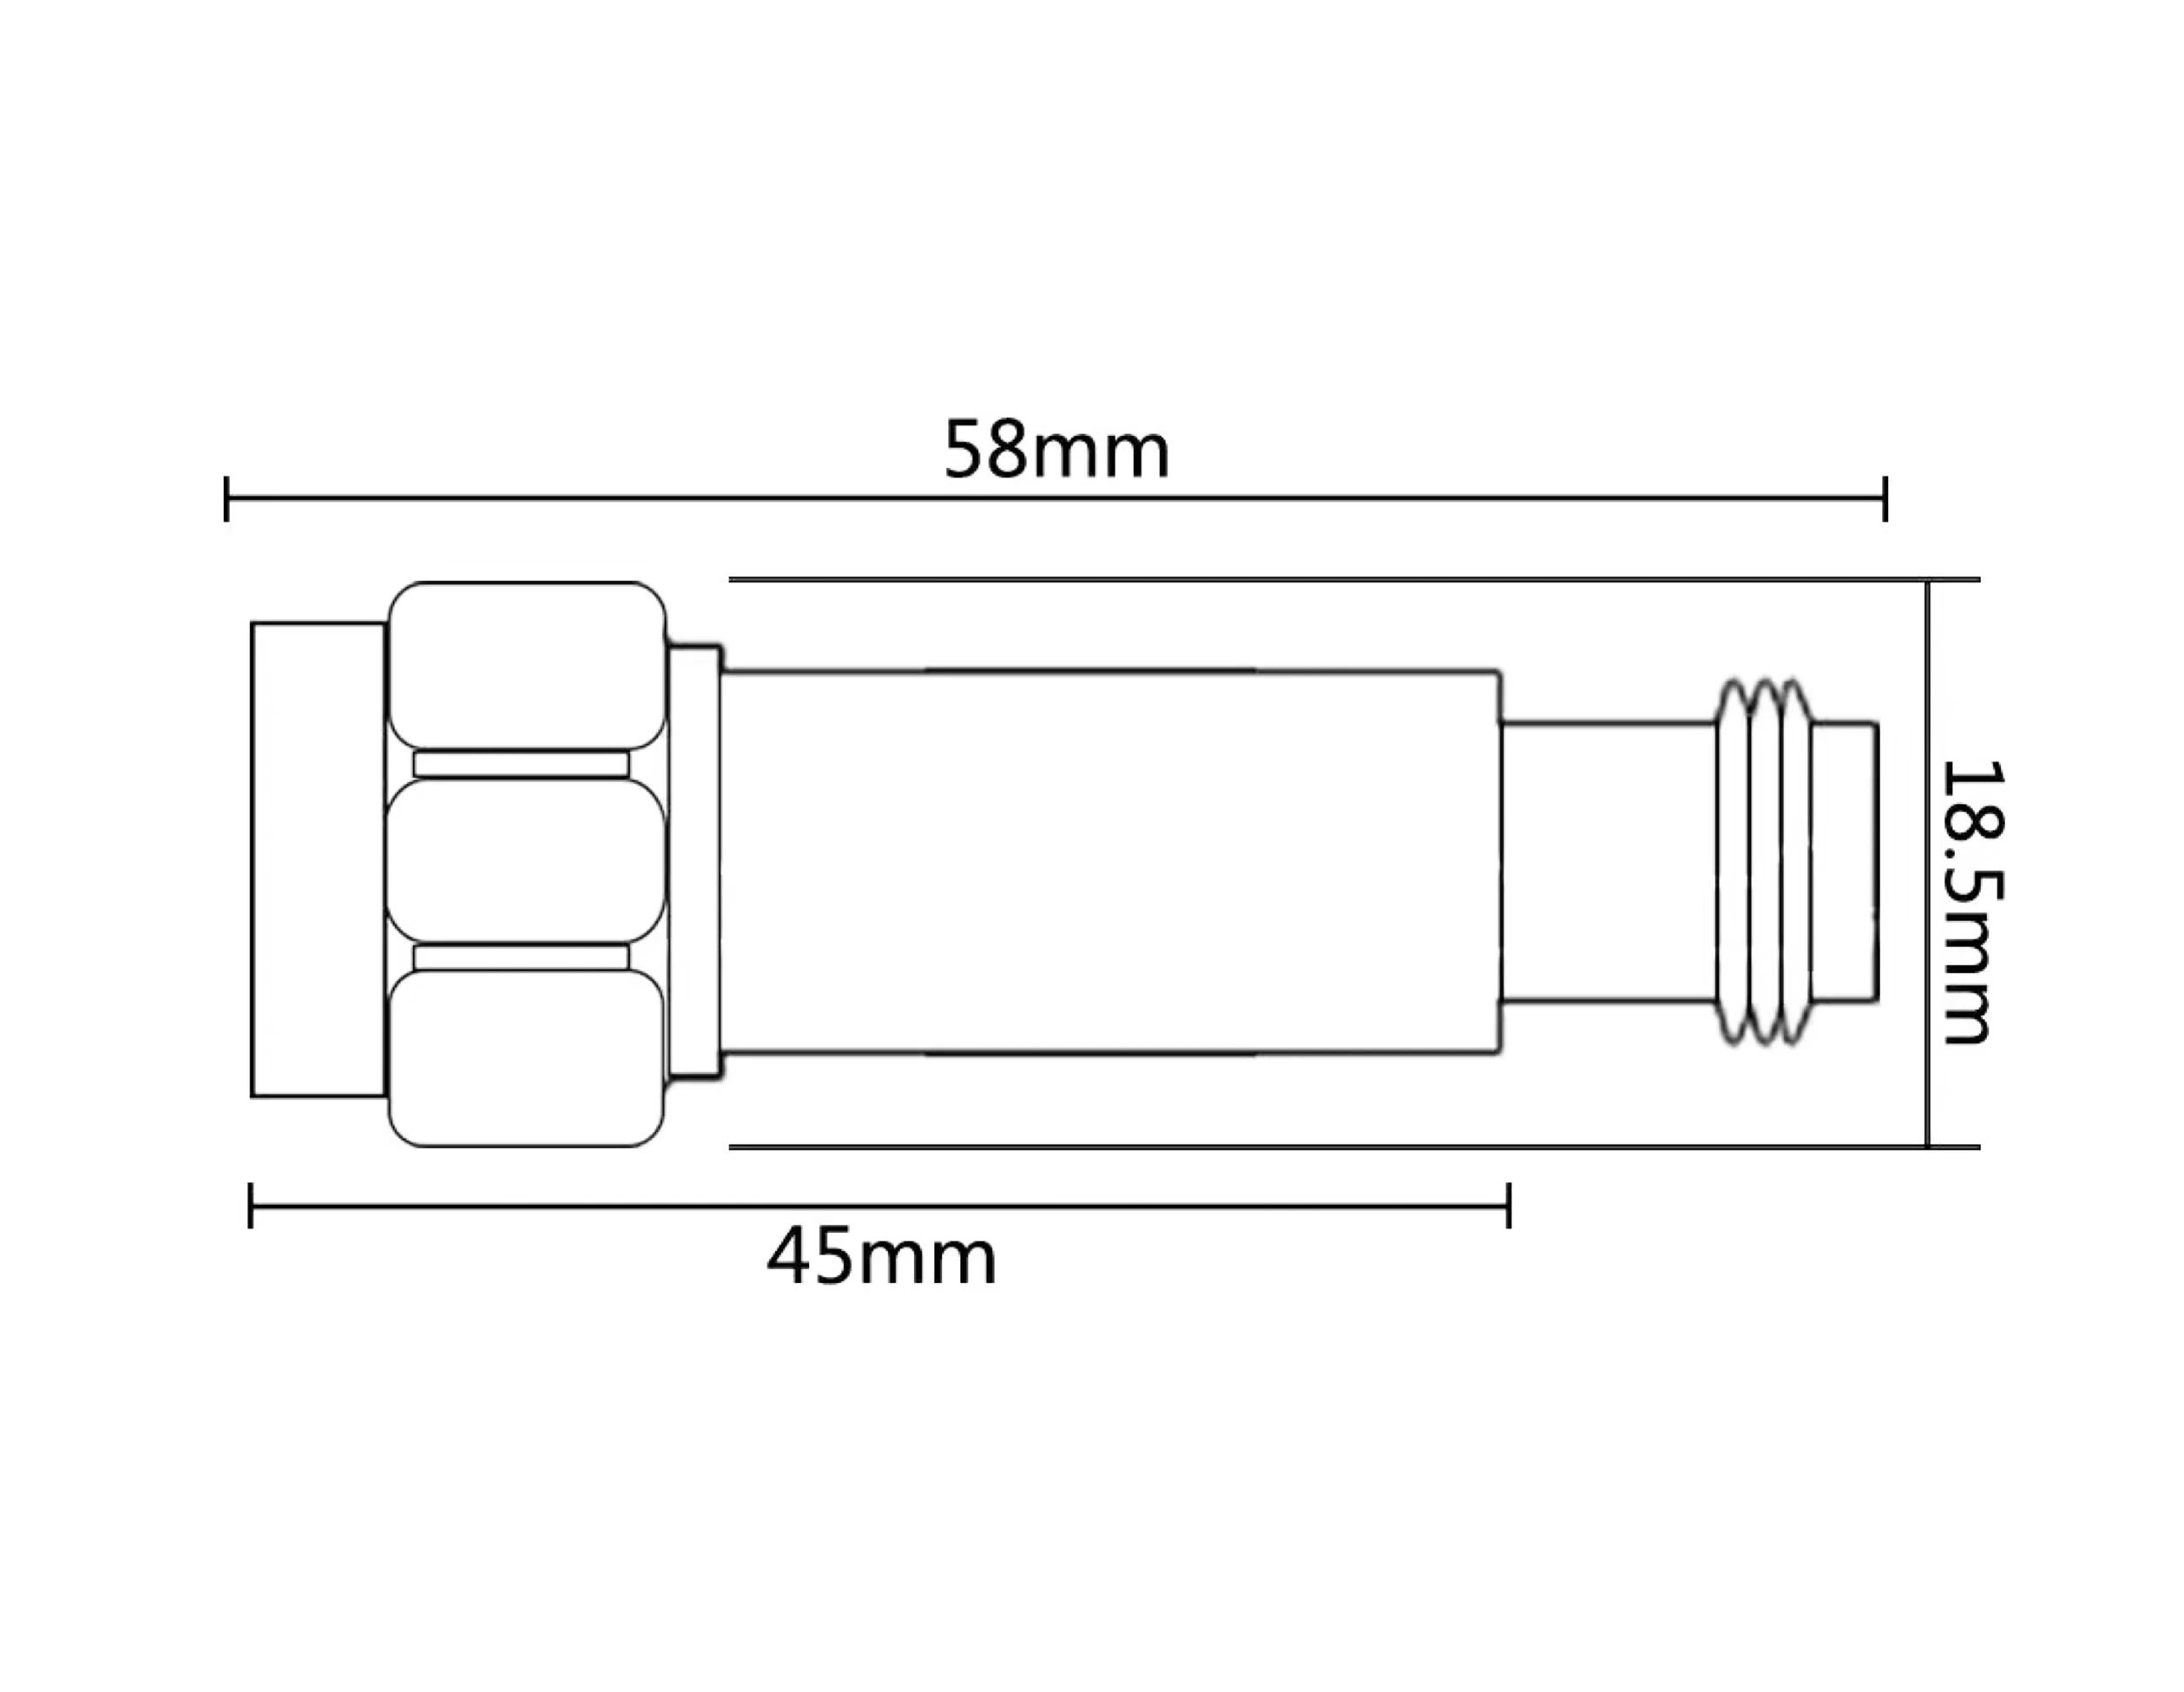 10-40dbi attenuator sma female to male 2W rf coaxial adaptor attenuator details